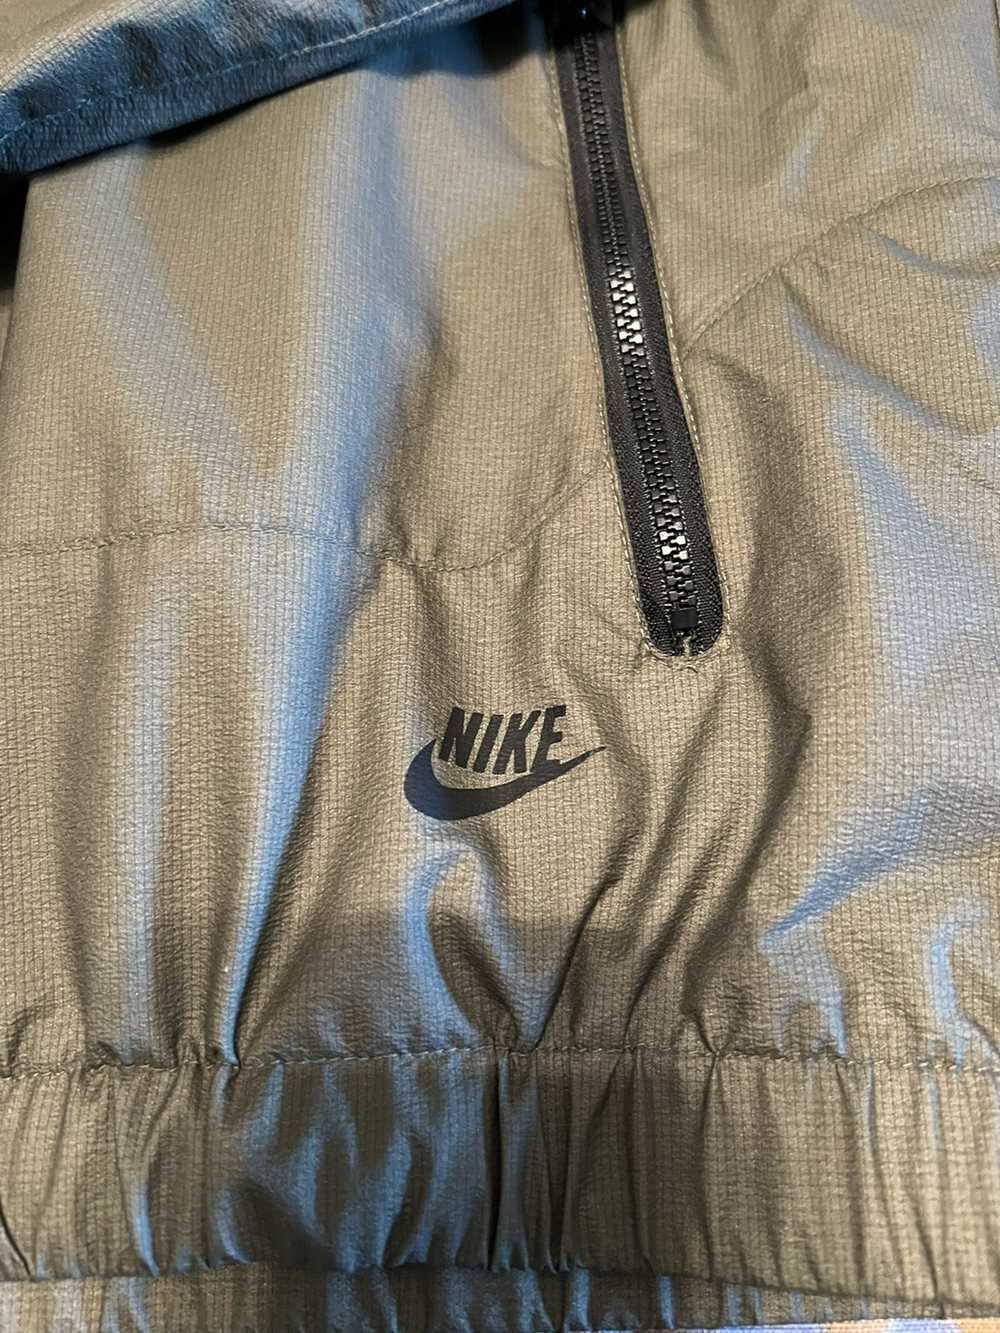 Nike Nike Windrunner - image 3